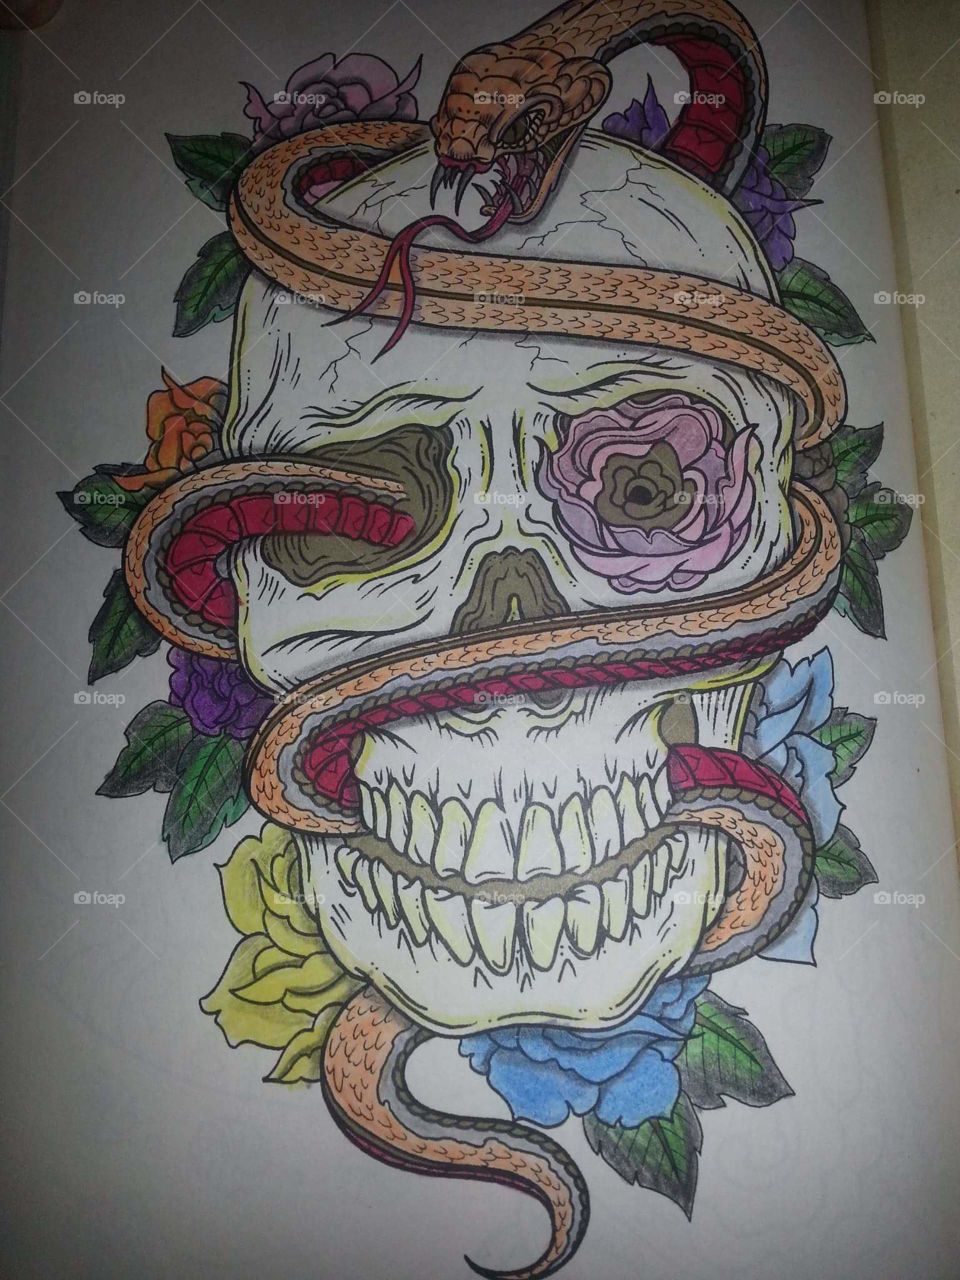 My skull and snake design